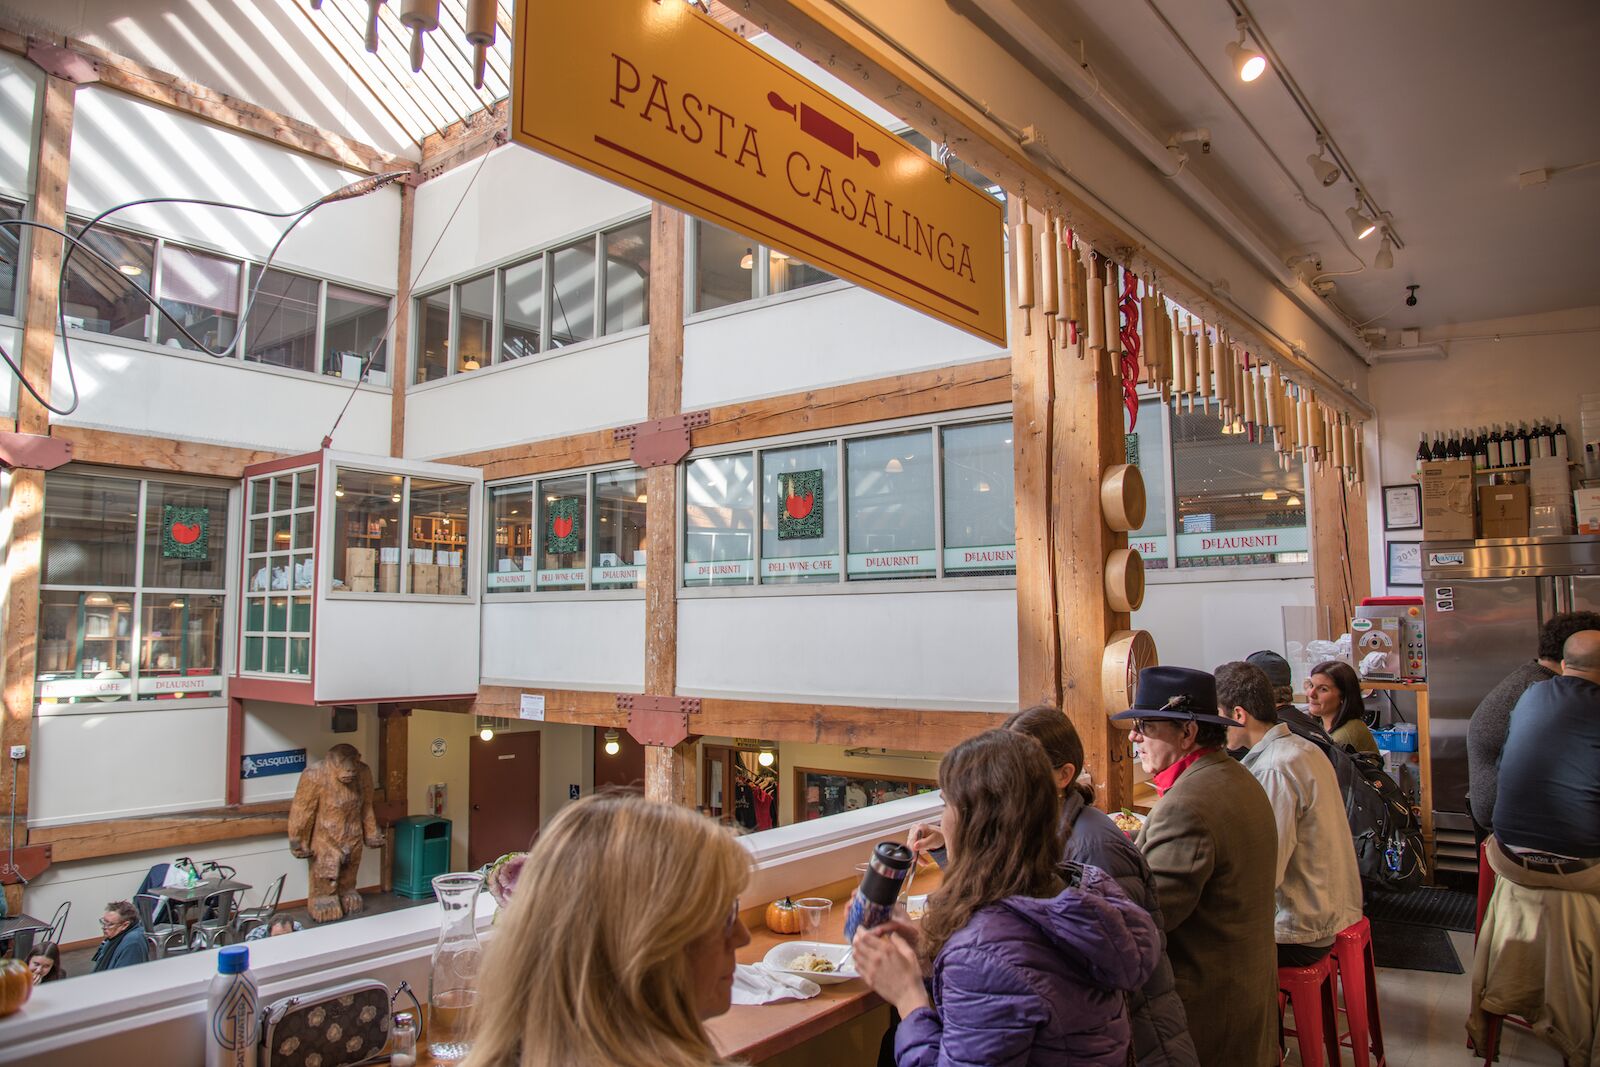 Pasta Casalinga Pike Place Market